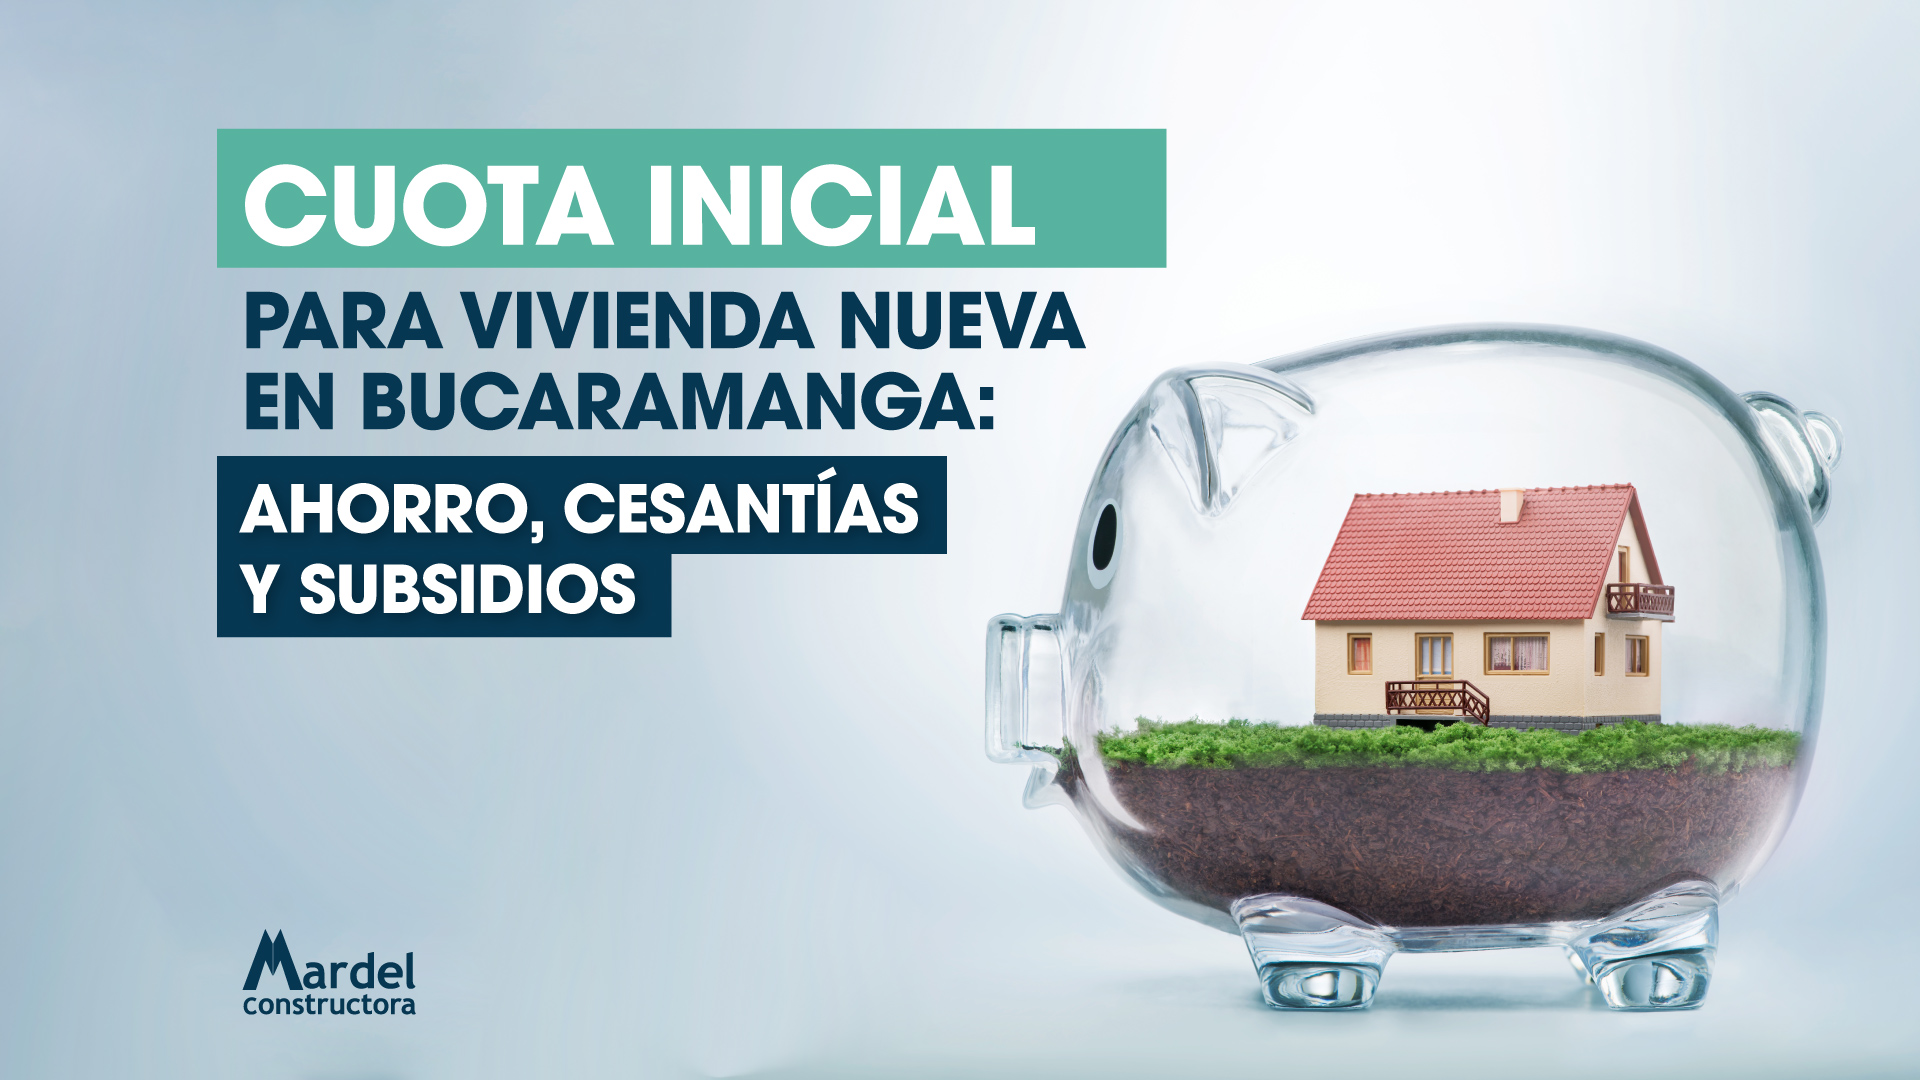 Cuota inicial para vivienda nueva en Bucaramanga: ahorro, cesantías y subsidios